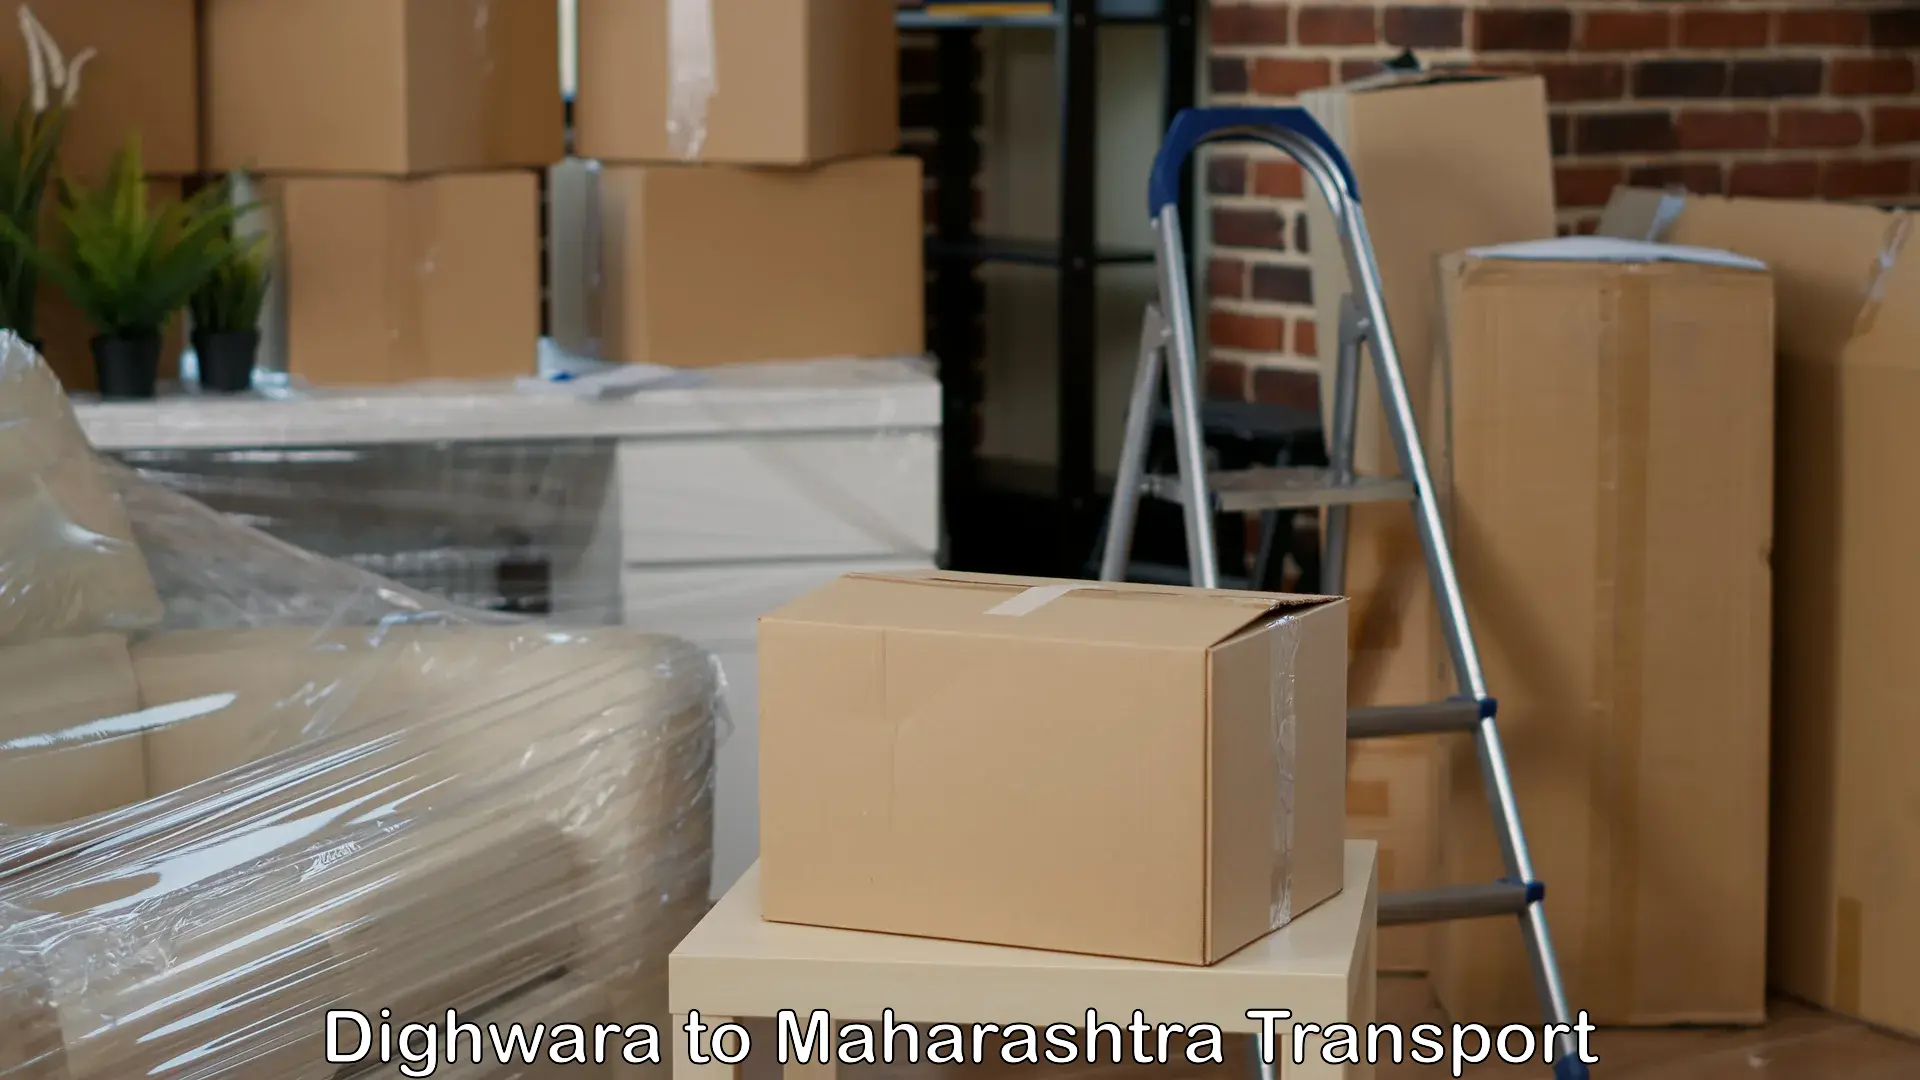 Furniture transport service Dighwara to Lakhandur